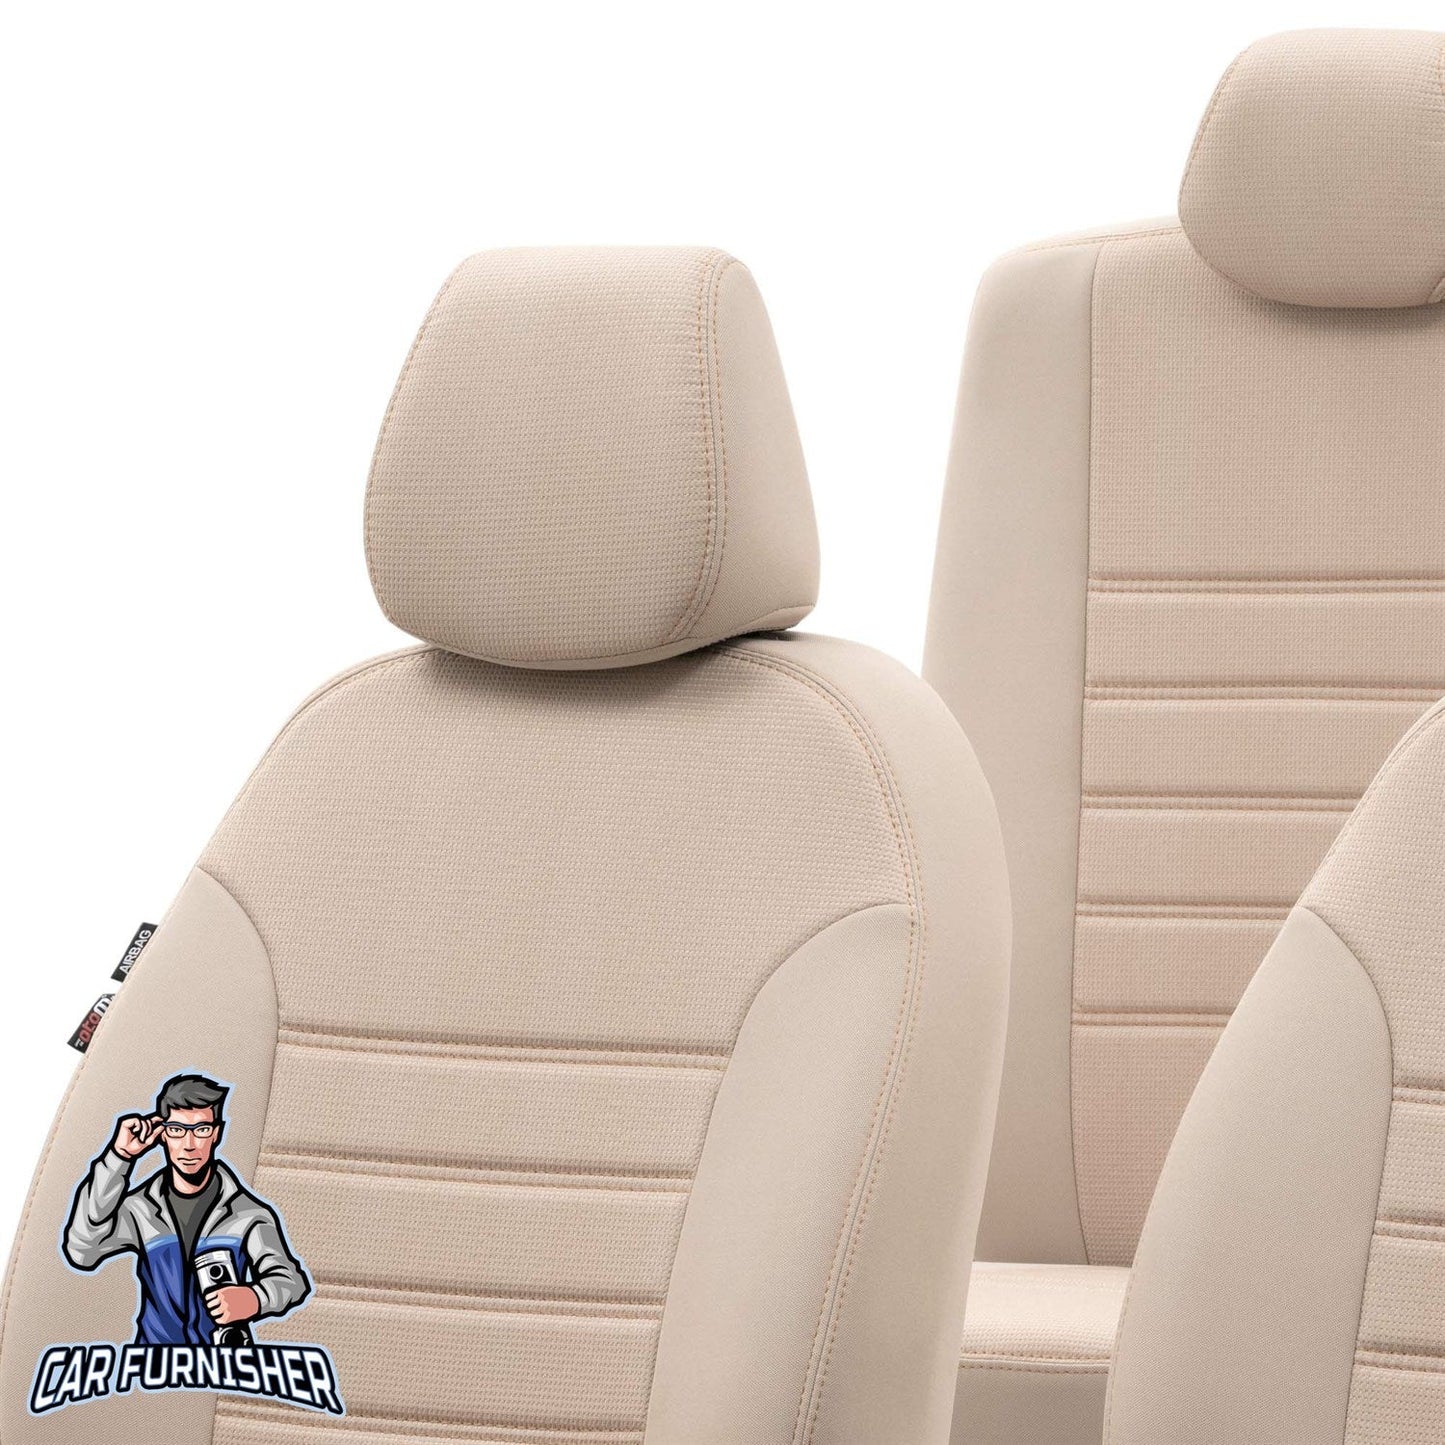 Mercedes GLC Class Seat Covers Original Jacquard Design Beige Jacquard Fabric